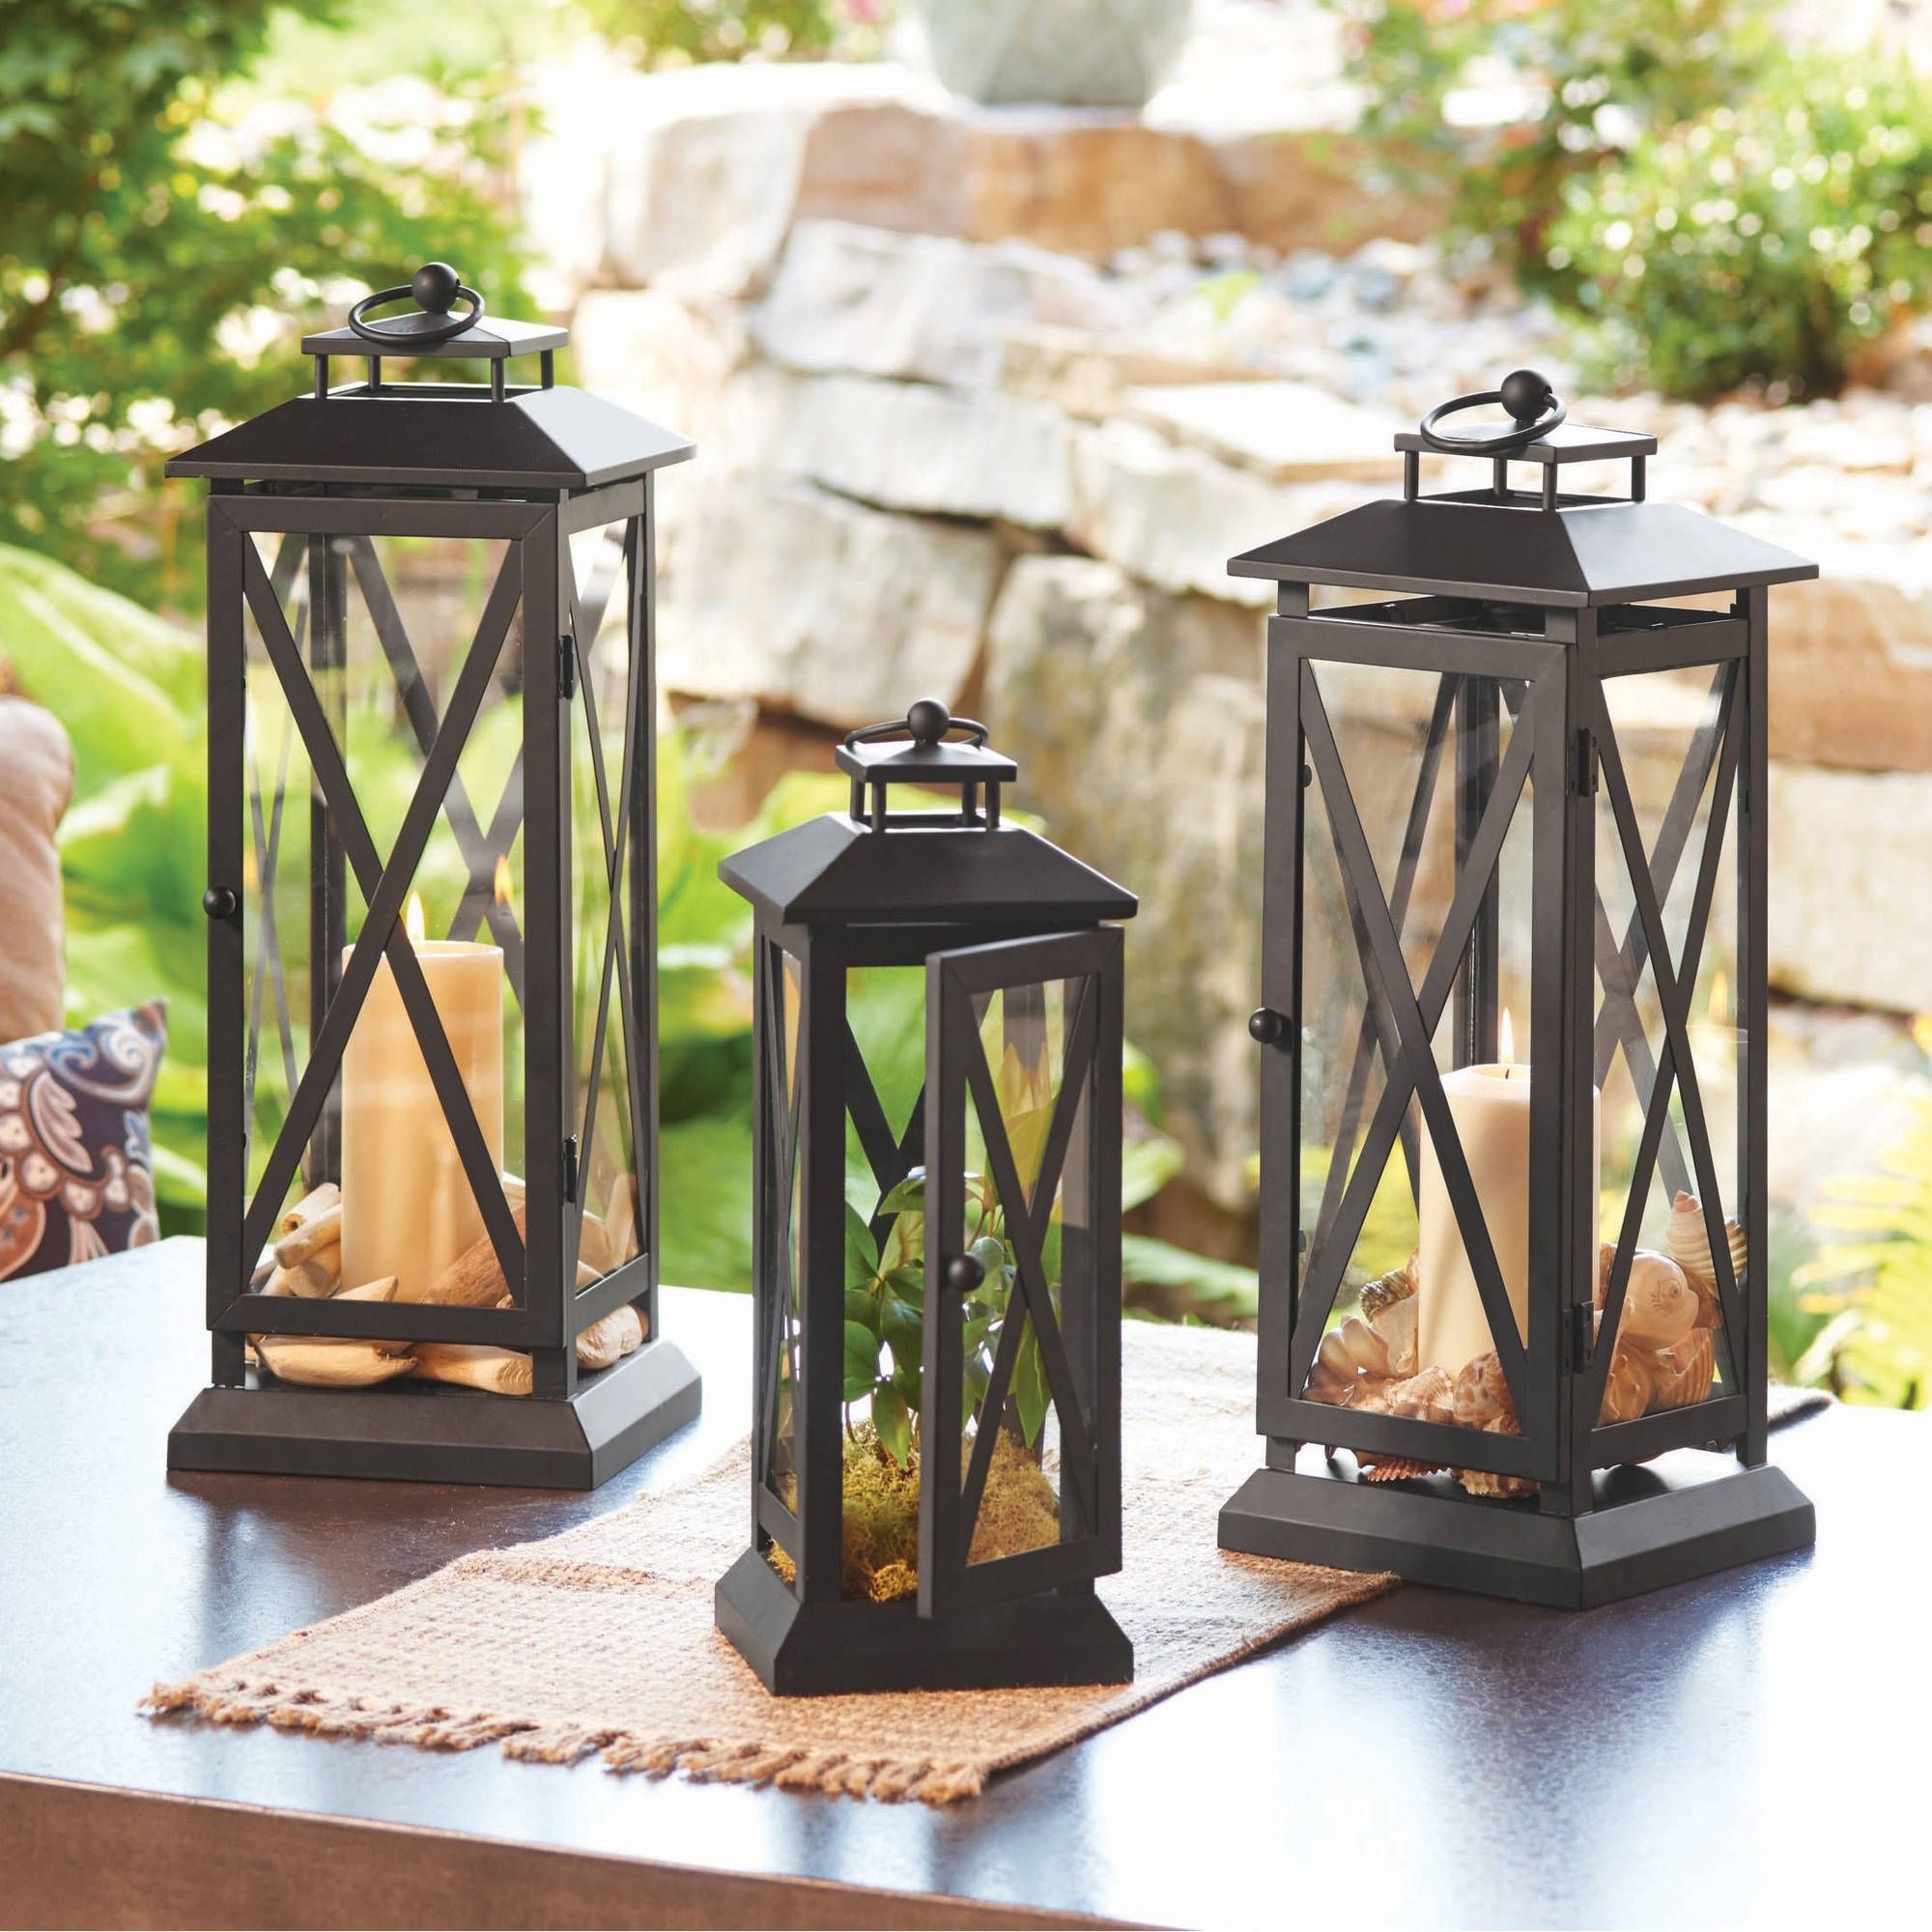 best outdoor lantern